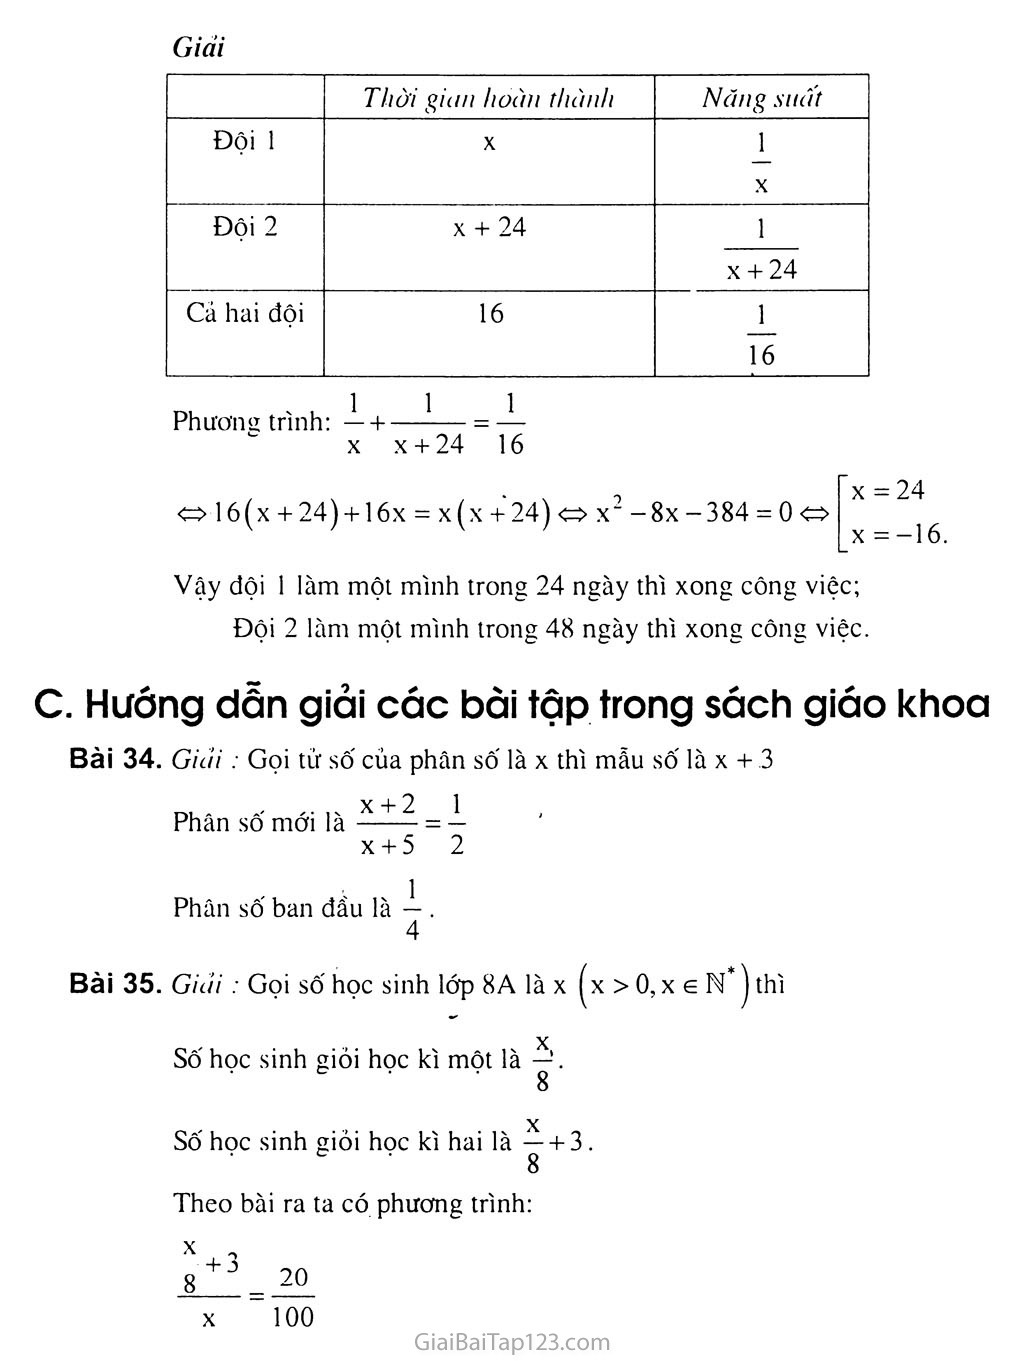 Bài 6. Giải bài toán bằng cách lập phương trình trang 3